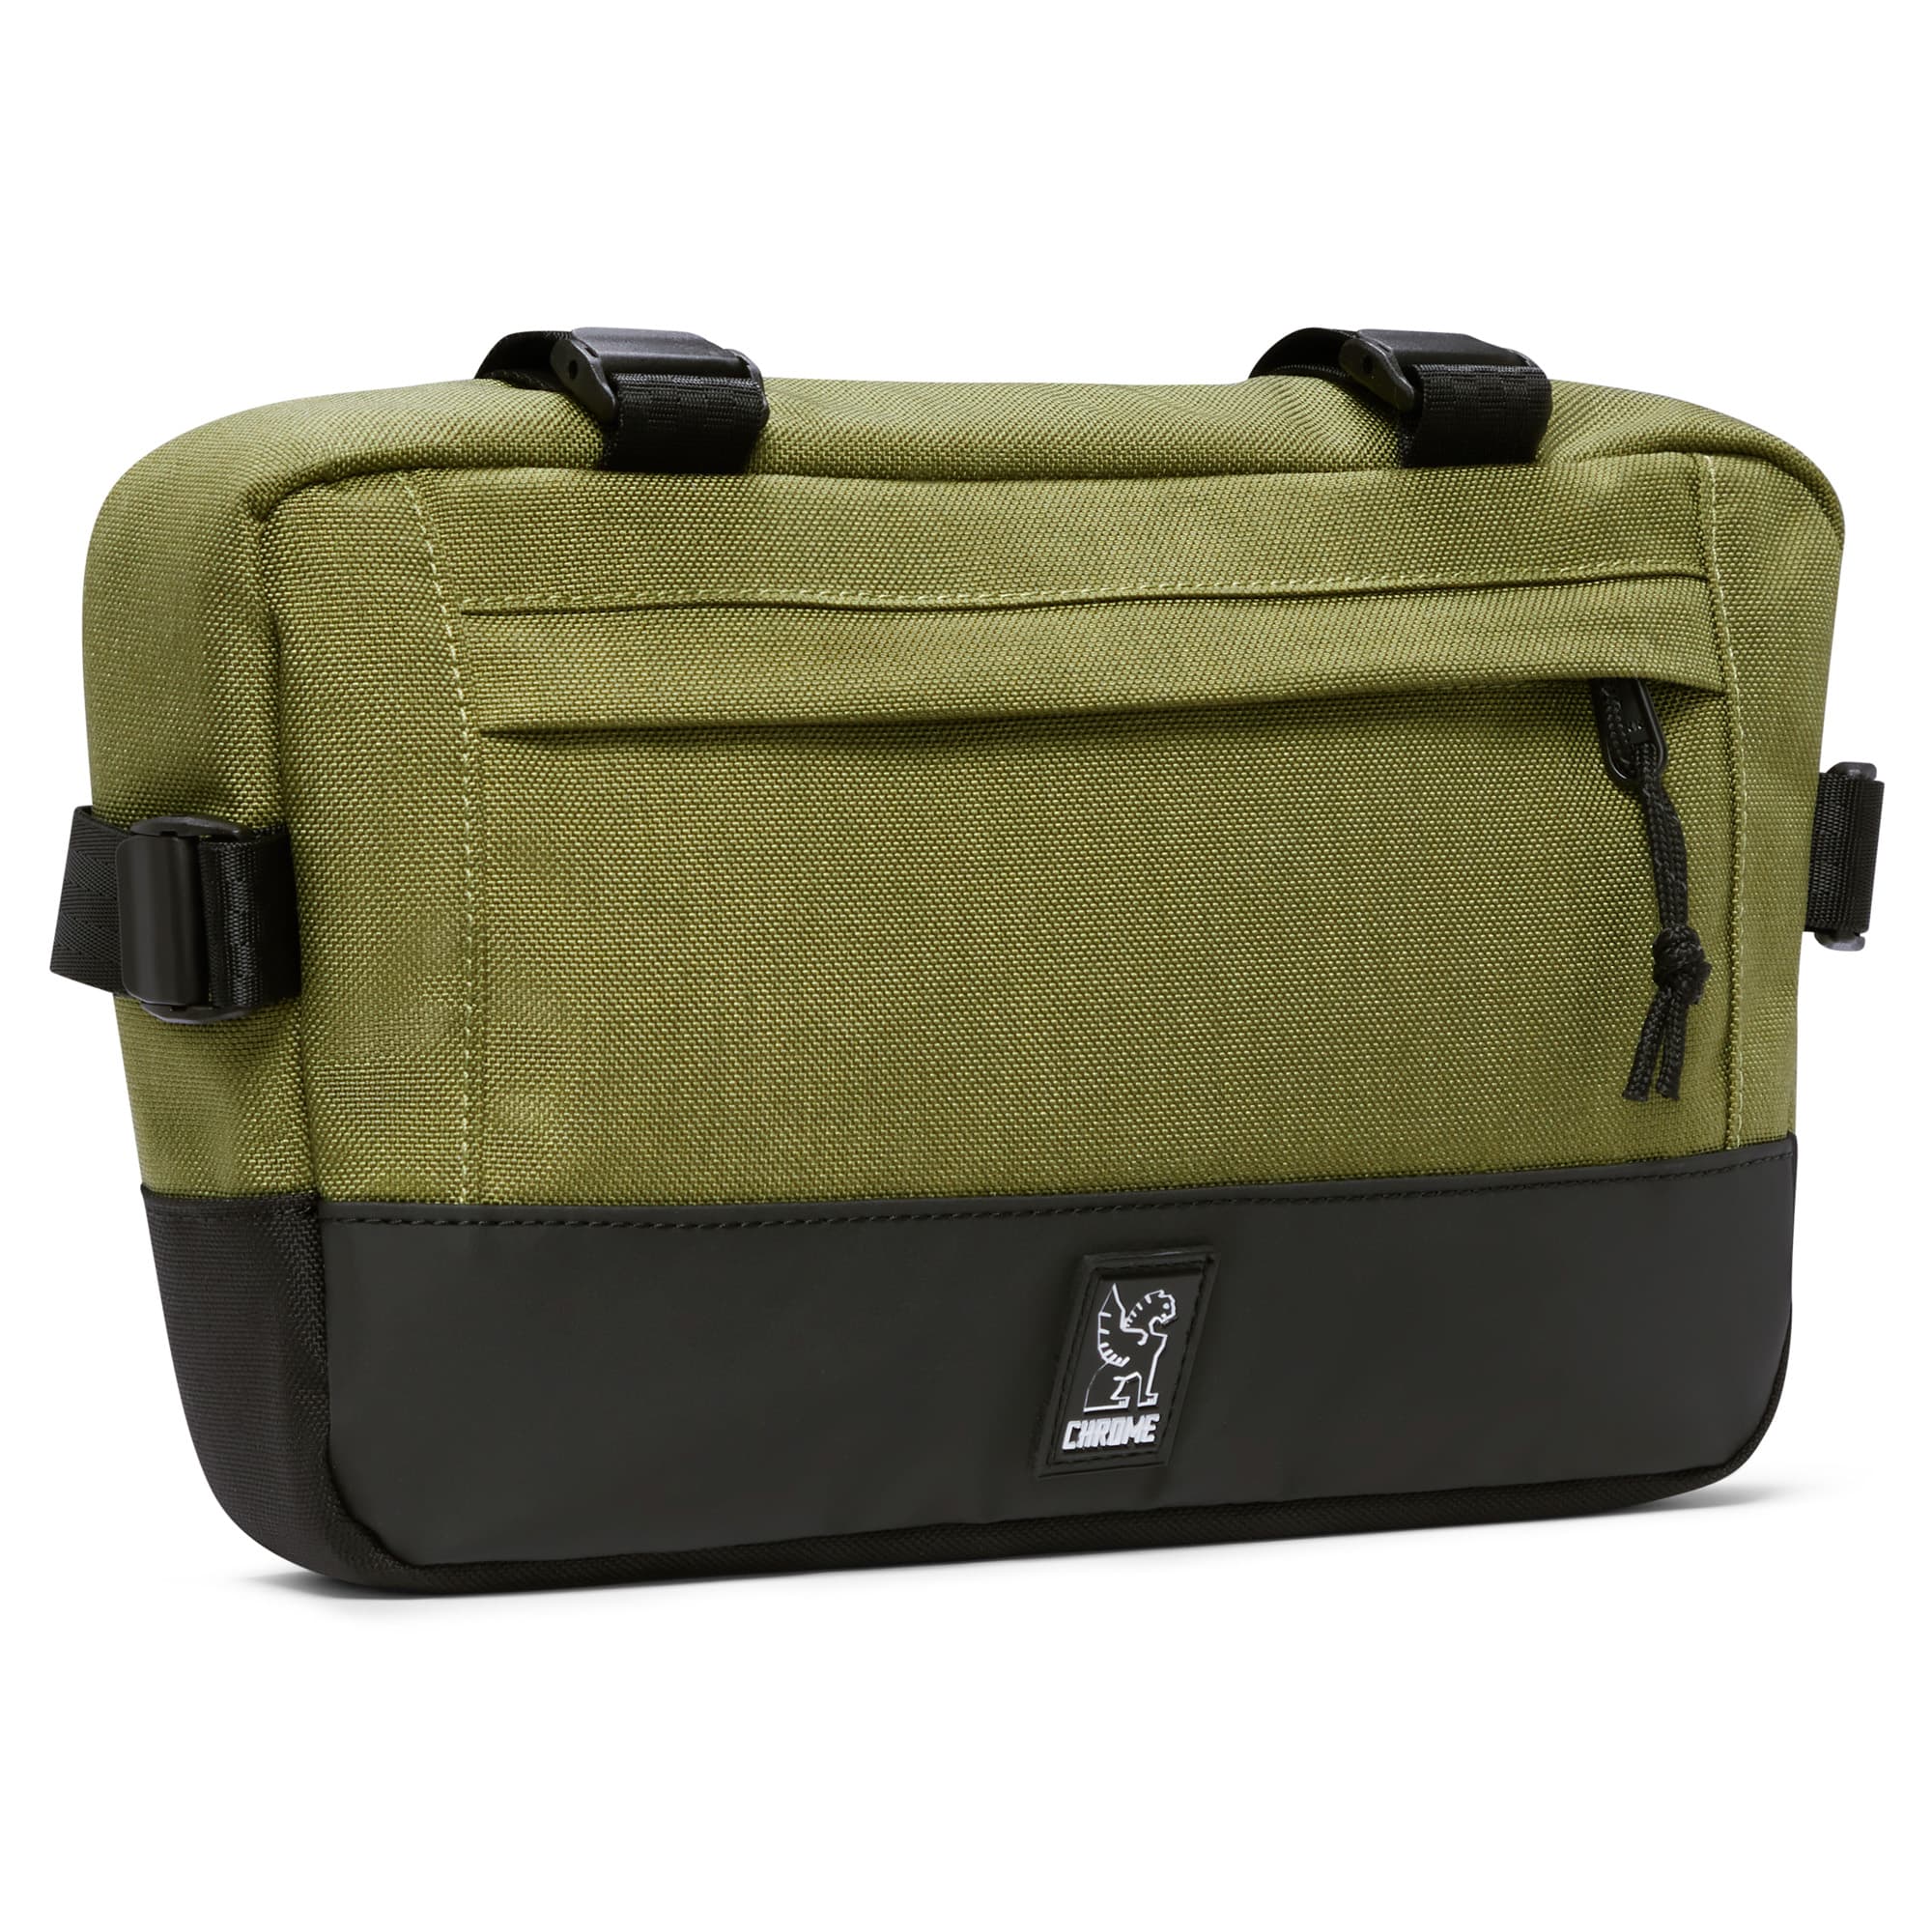 Medium size frame bag & sling in green #color_olive branch